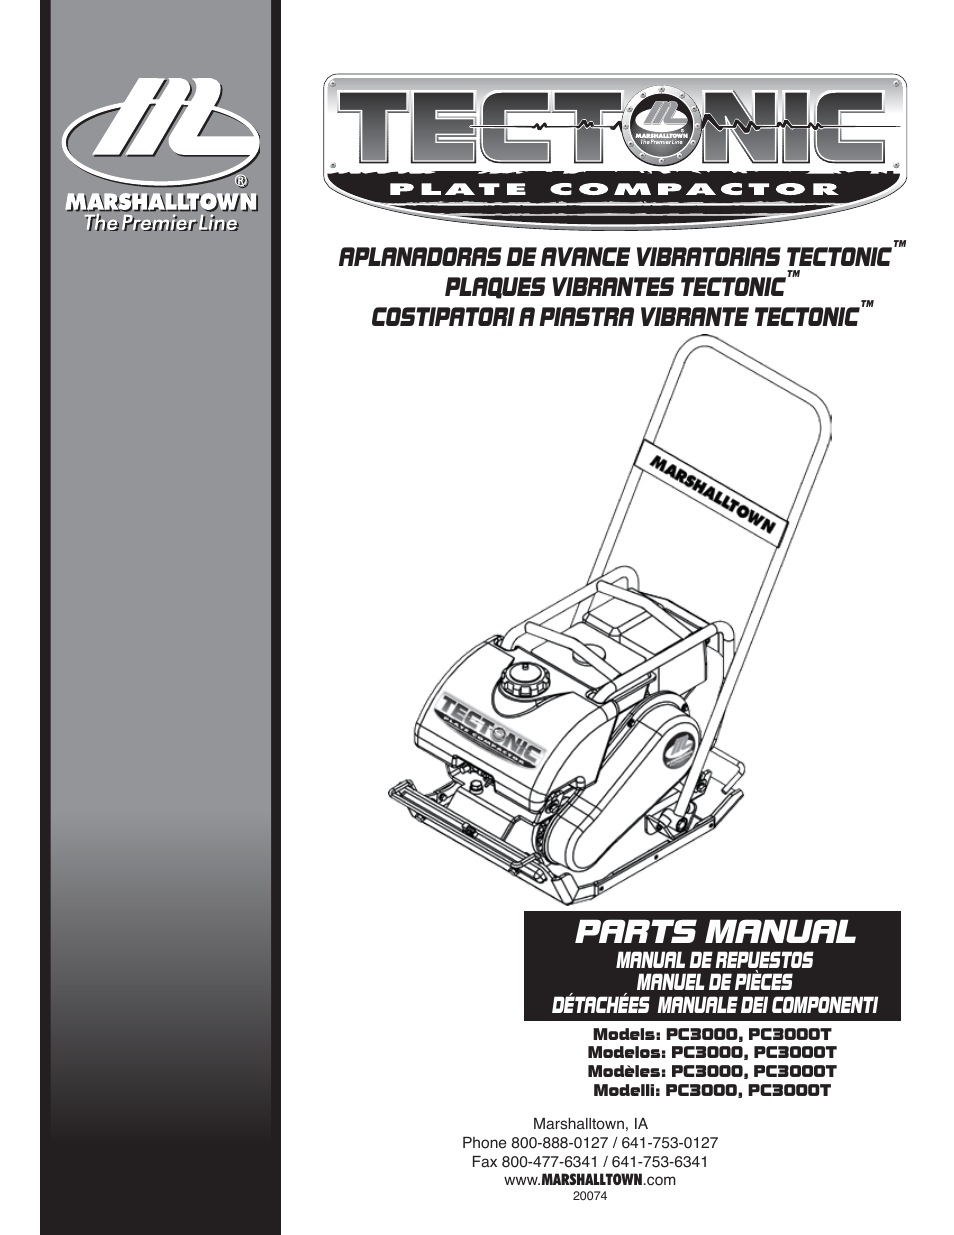 PC3000 Parts Manual